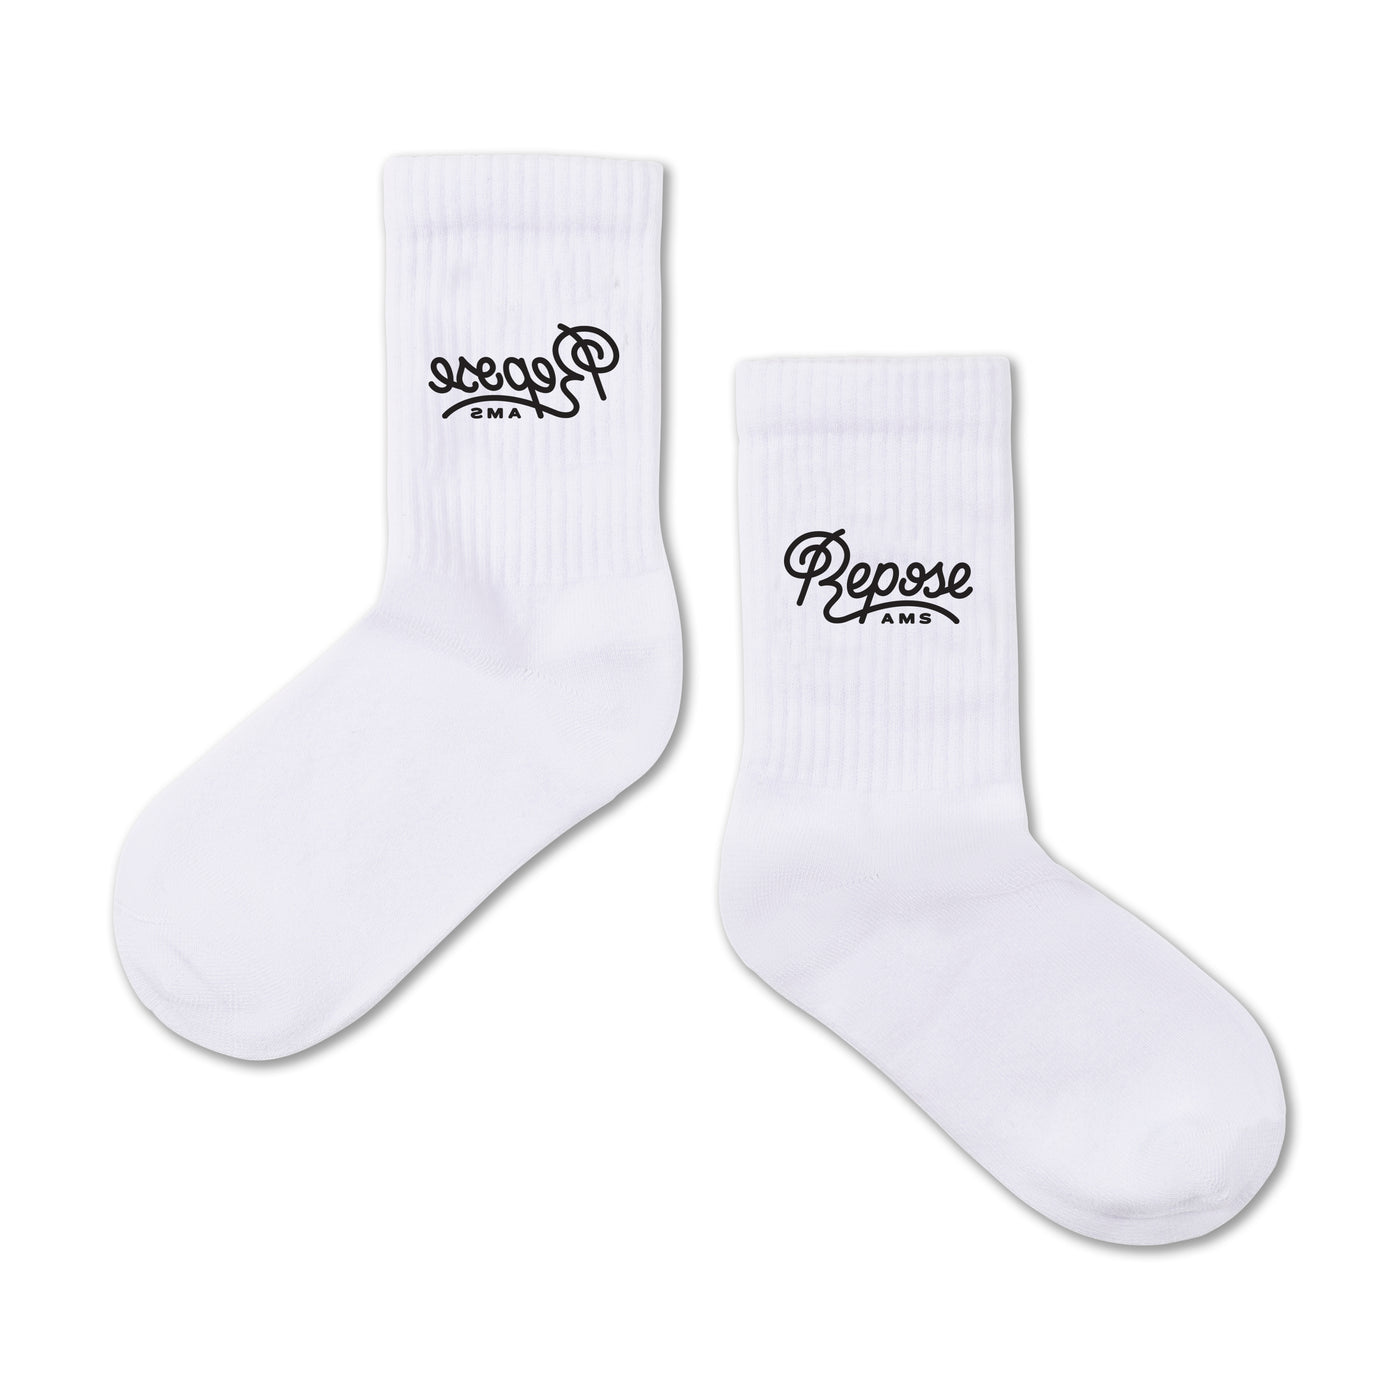 sporty socks - logo black